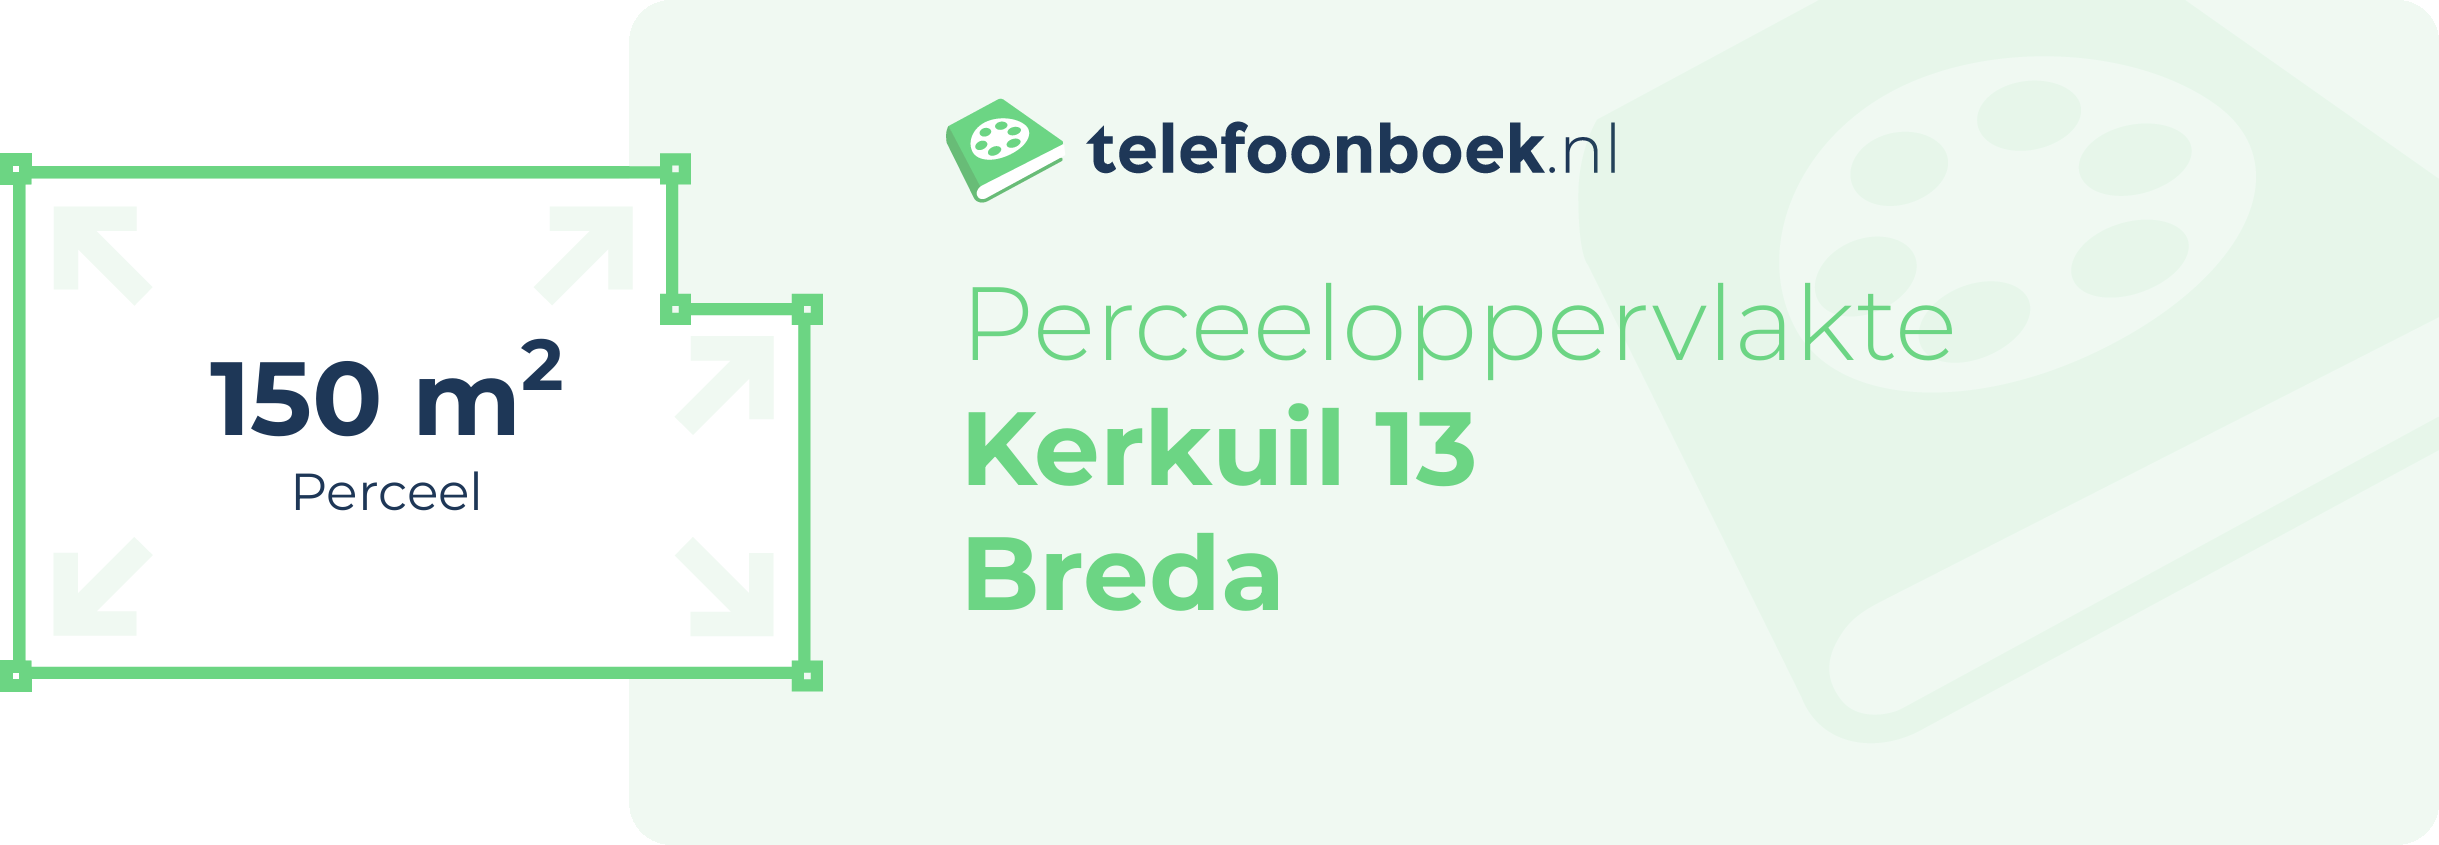 Perceeloppervlakte Kerkuil 13 Breda